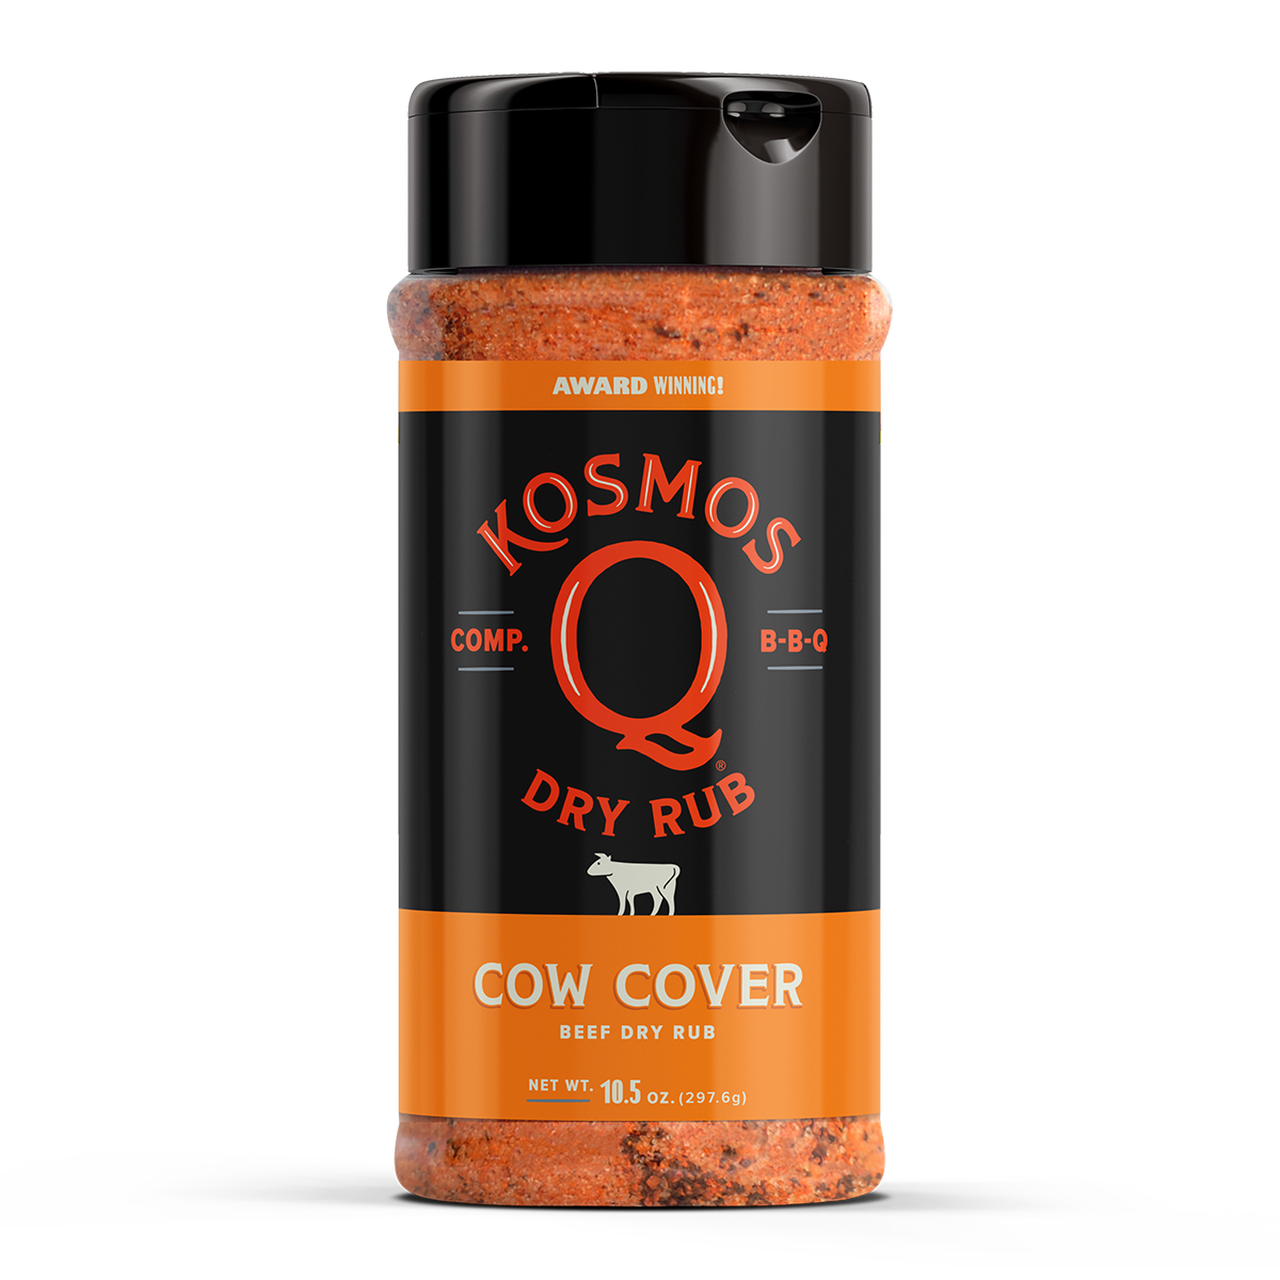 Kosmo's Q - Cow Cover Dry Rub